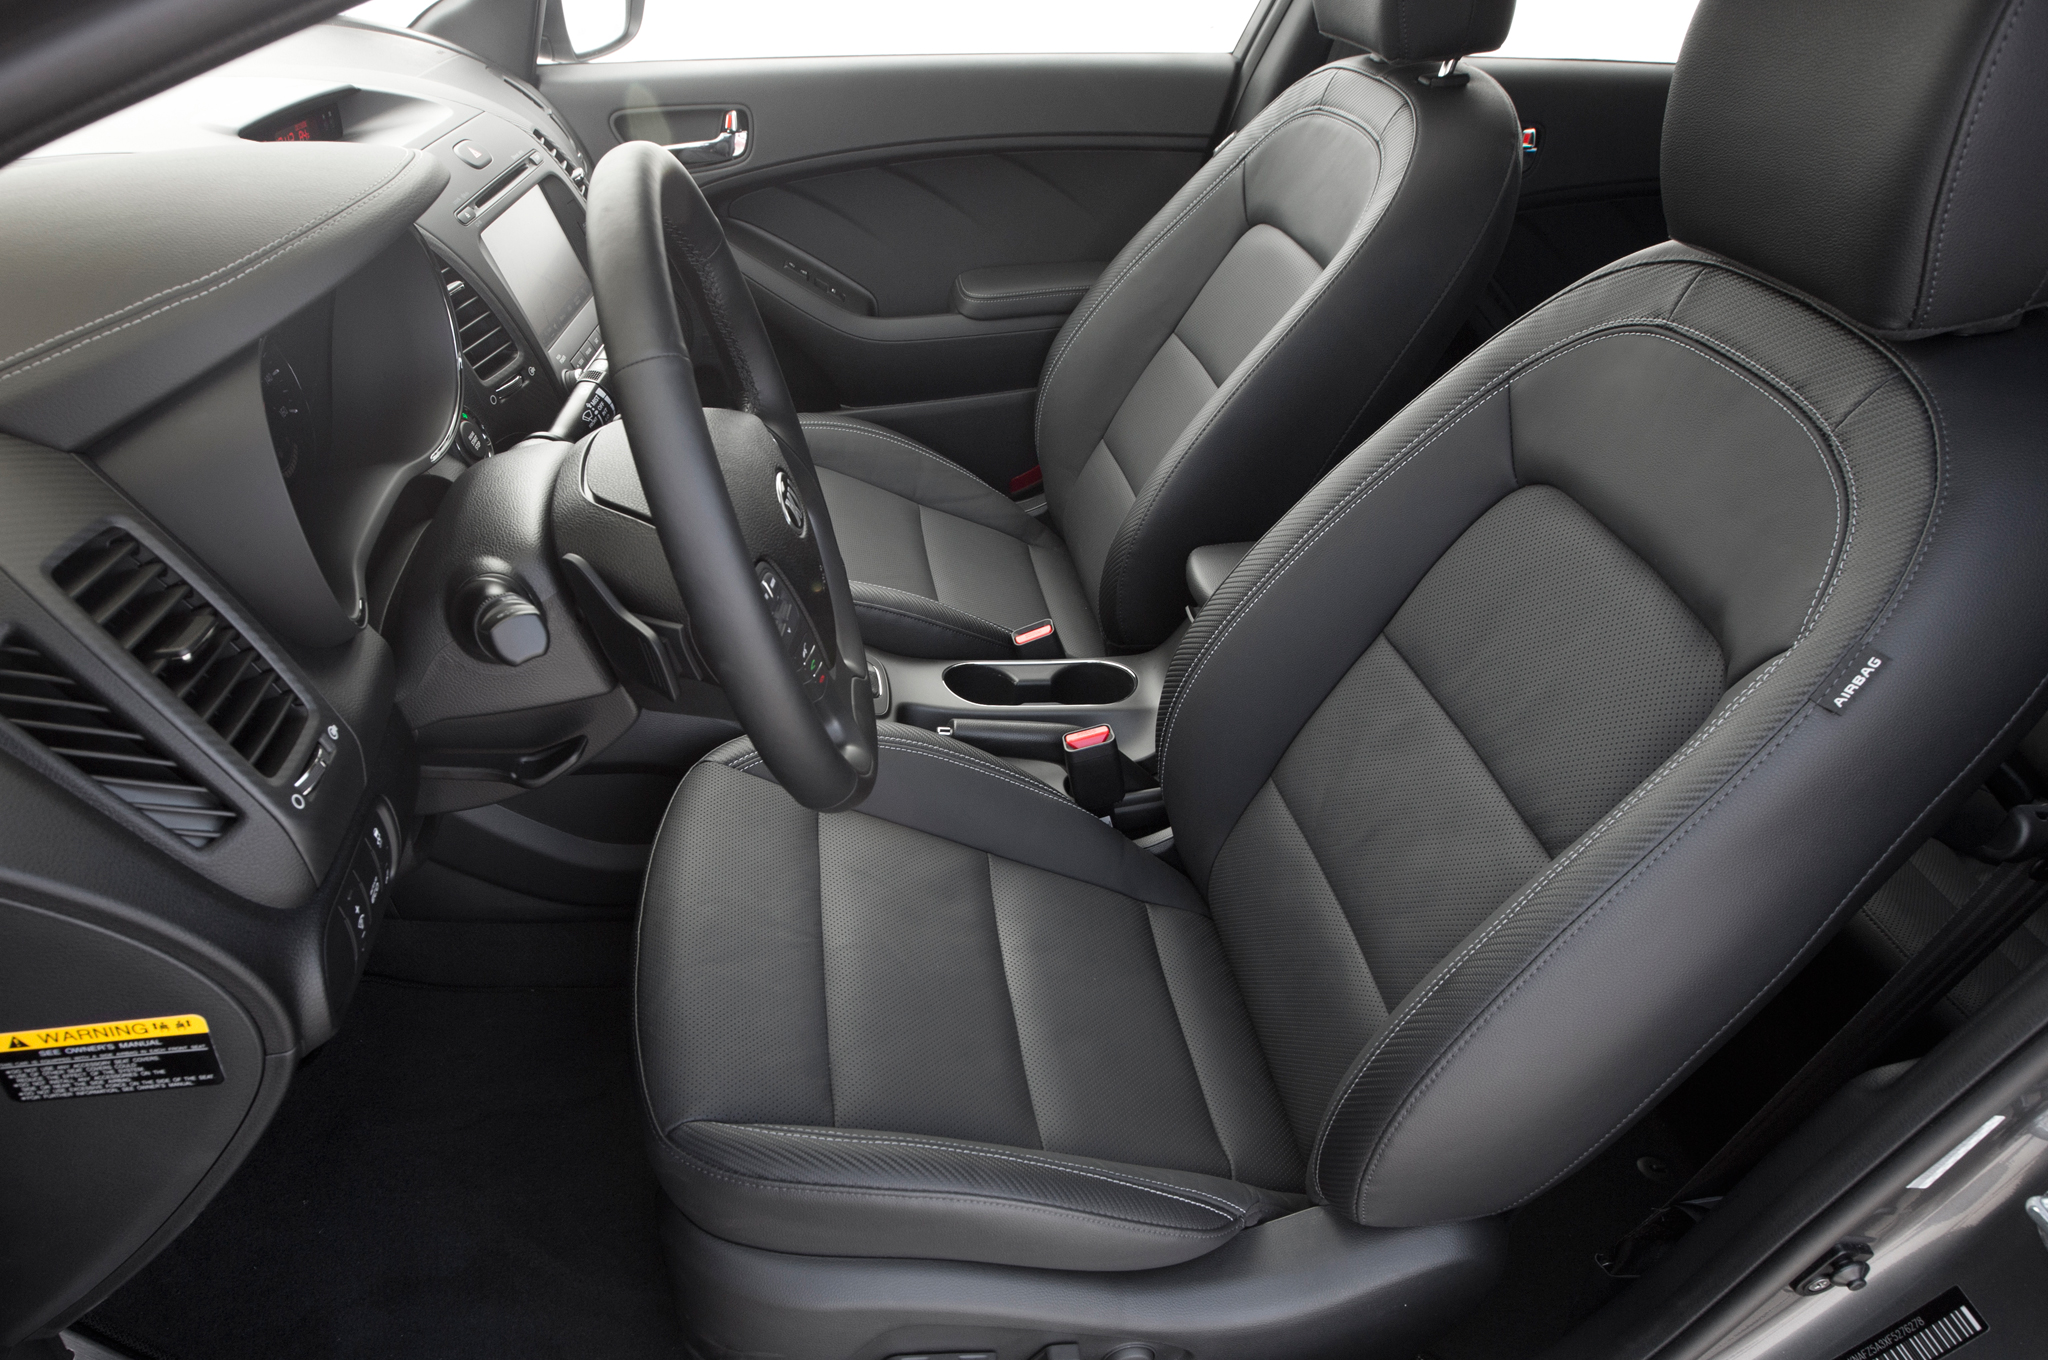 2015-Kia-Forte5-SX-T-GDI-front-interior-seats